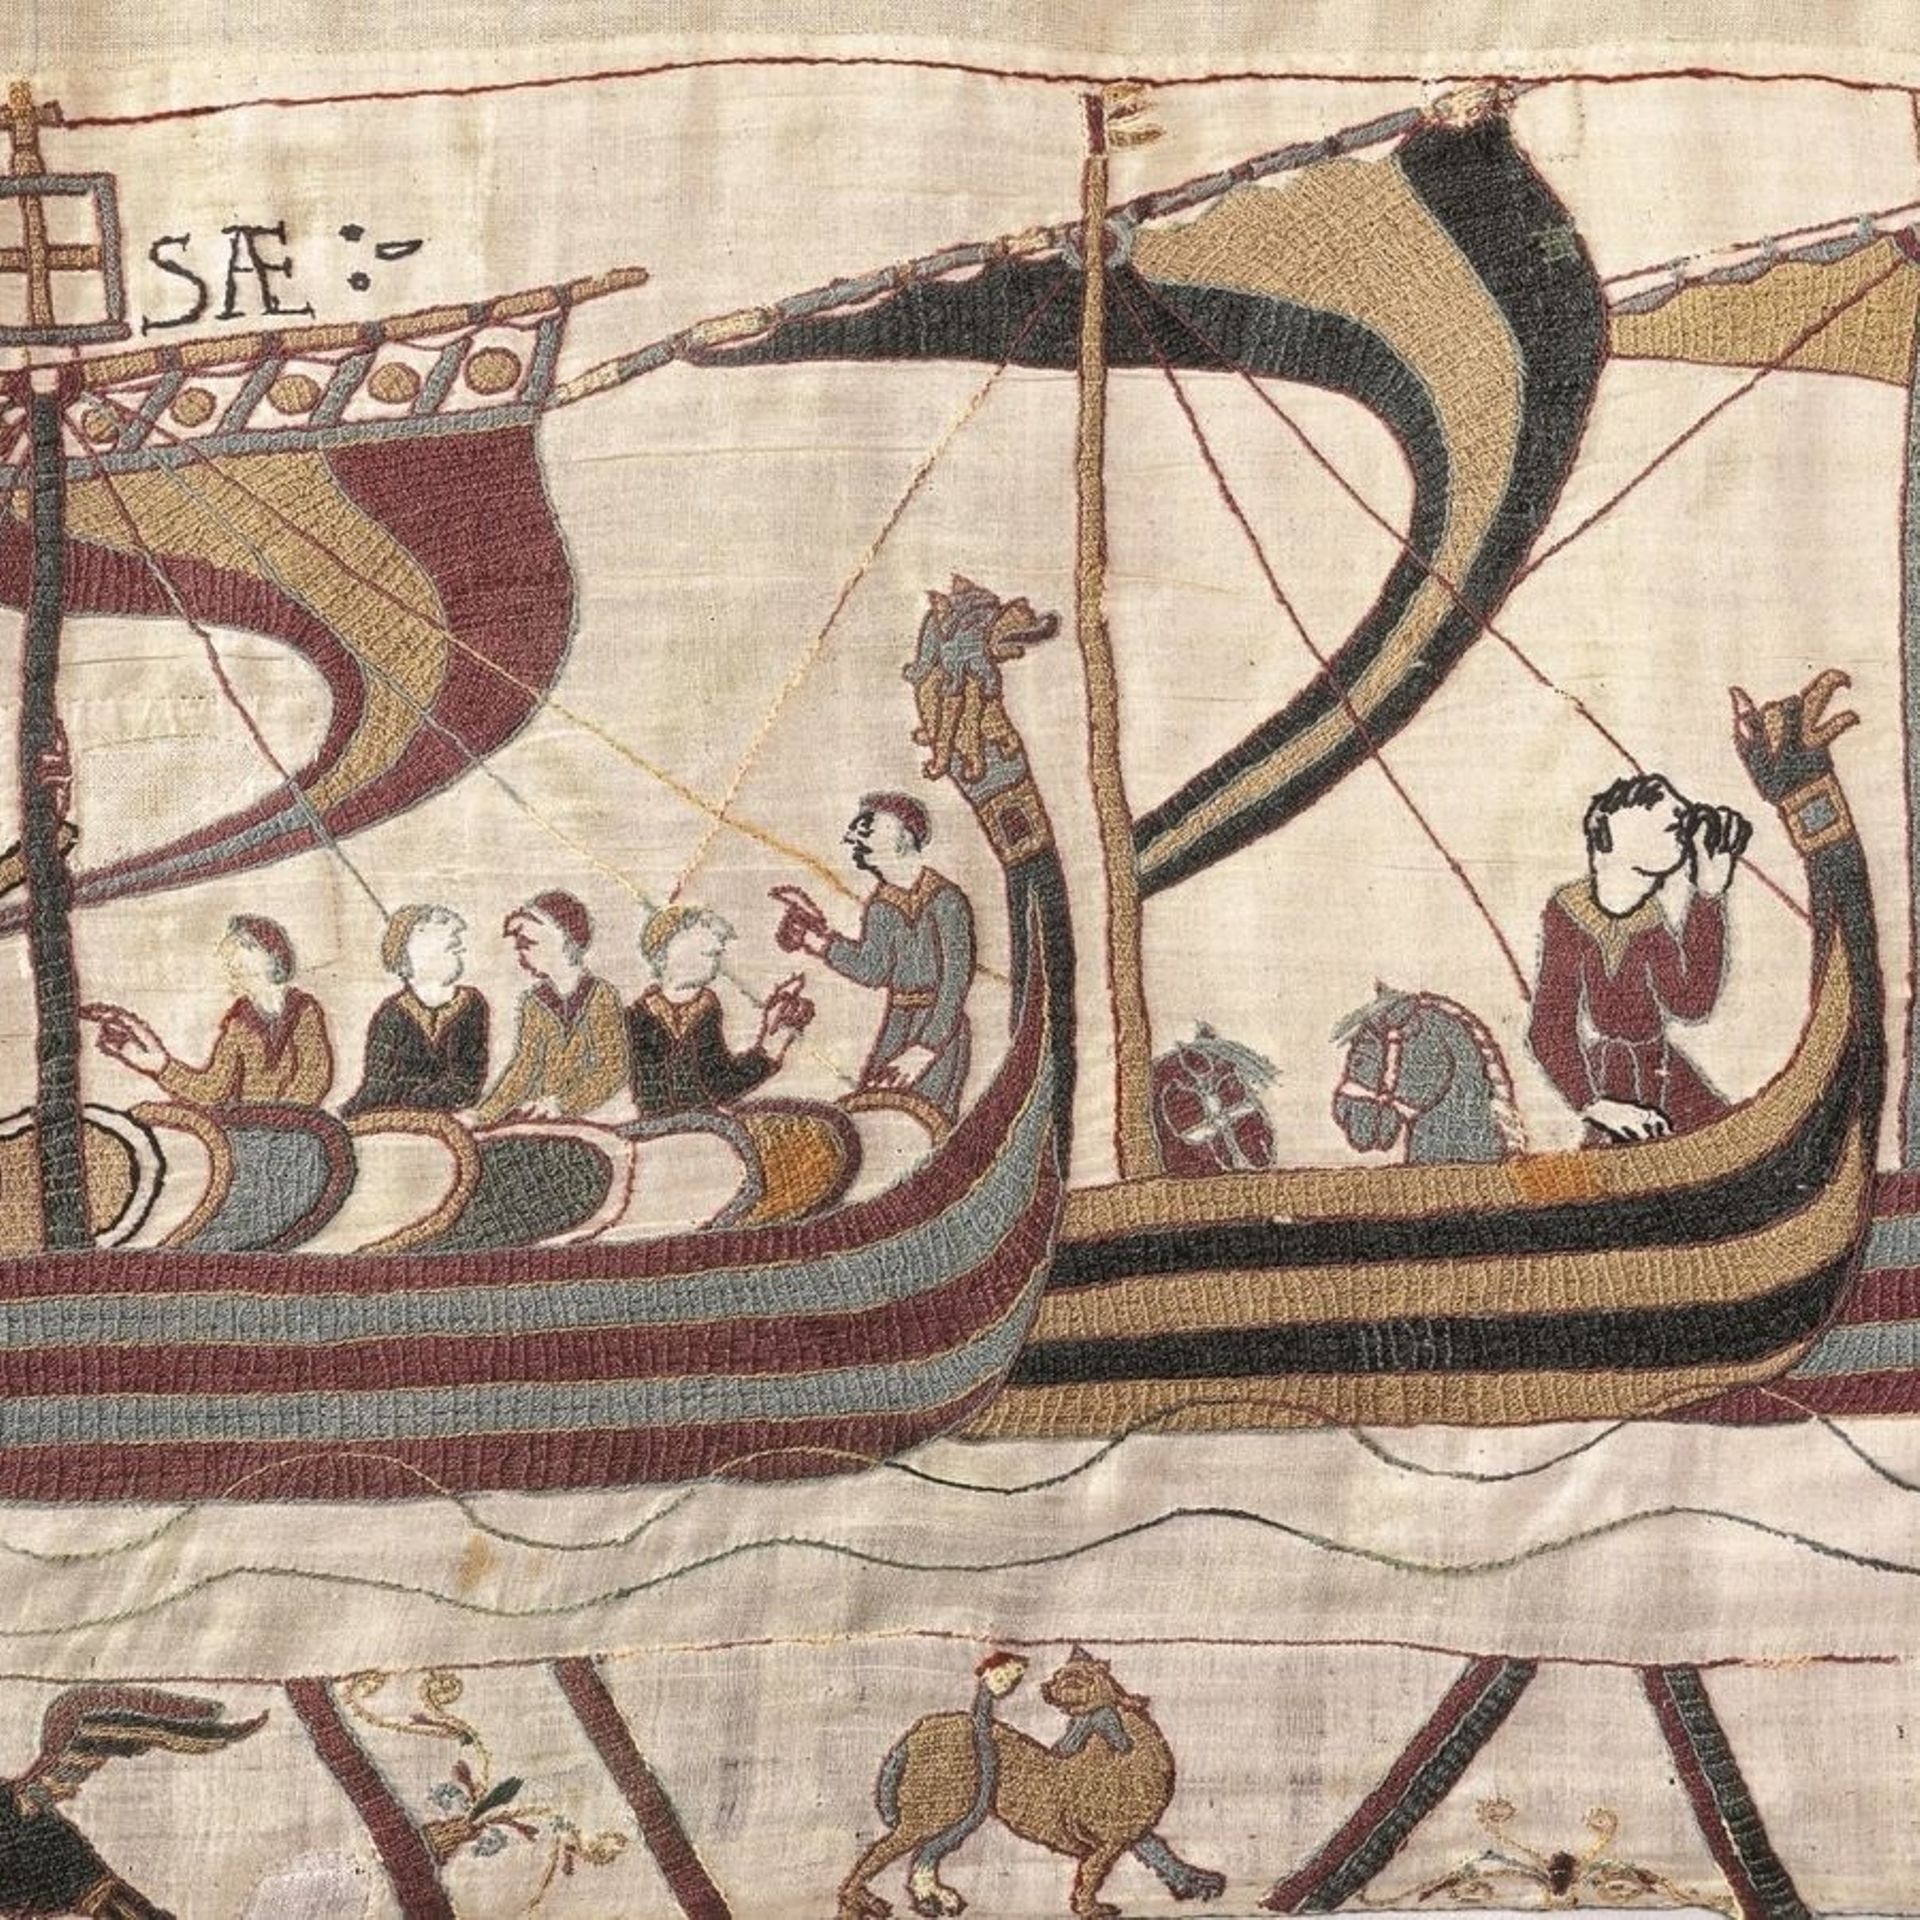 Les bateaux de Guillaume le Conquérant ont pris la mer, direction: l'Angleterre